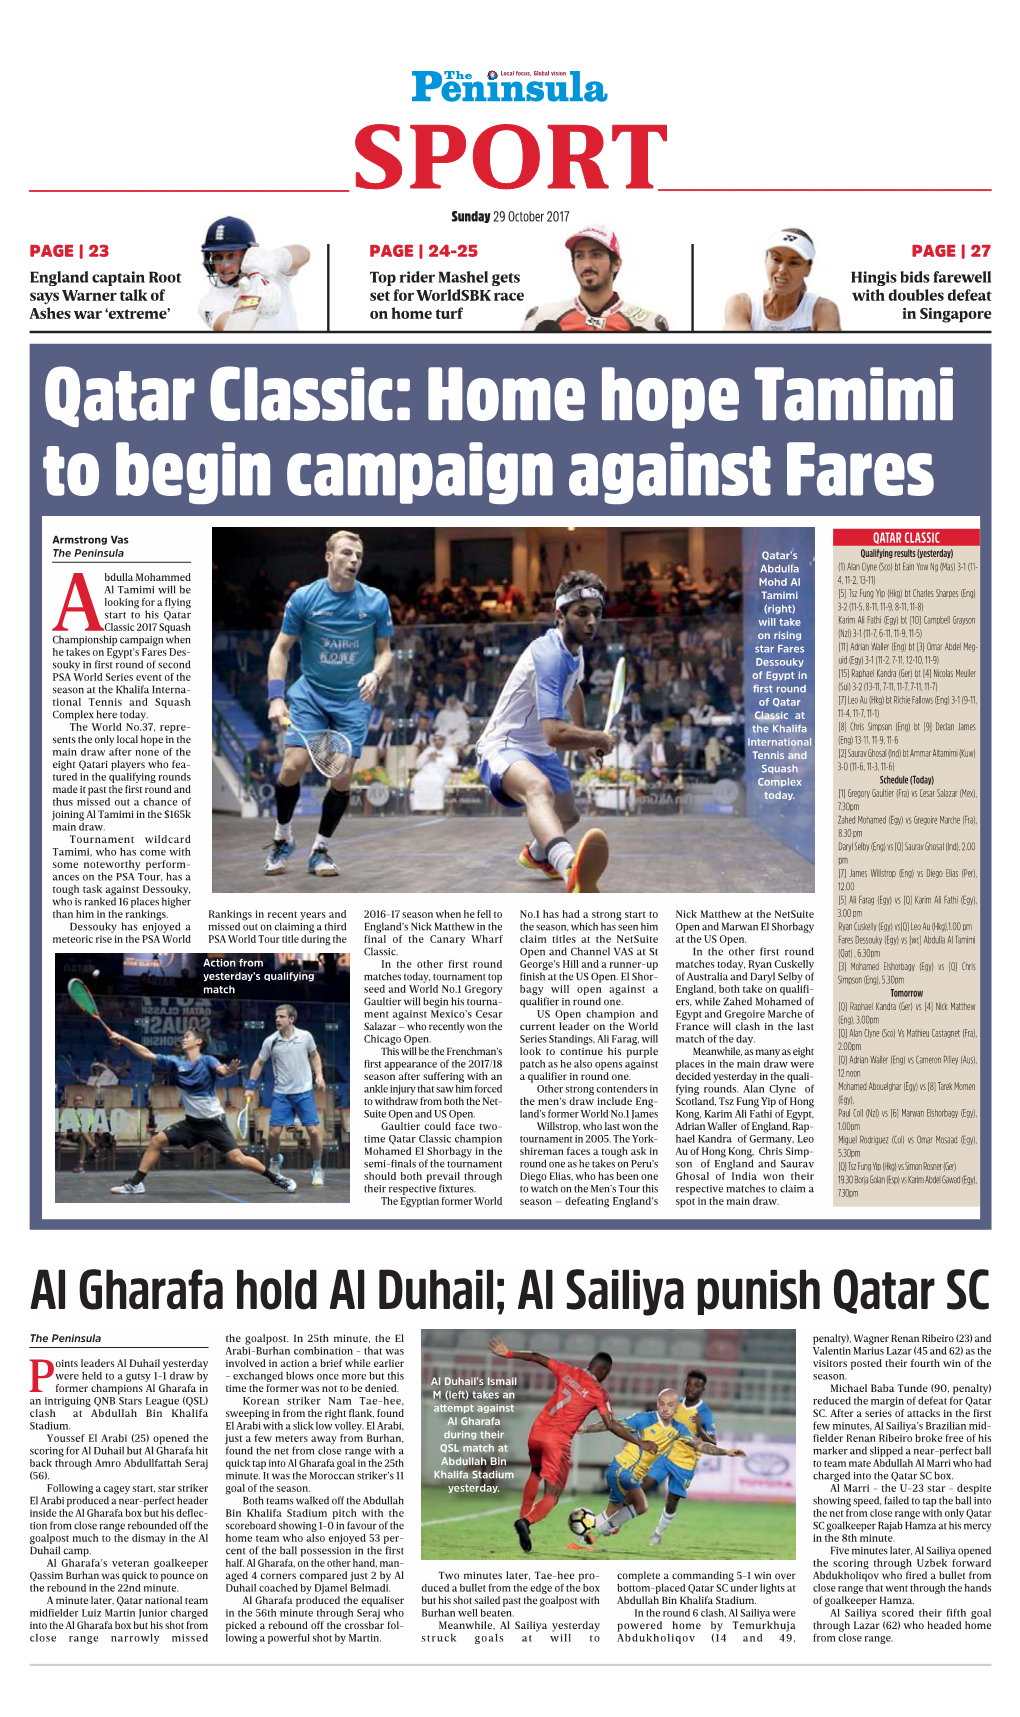 Al Gharafa Hold Al Duhail; Al Sailiya Punish Qatar SC